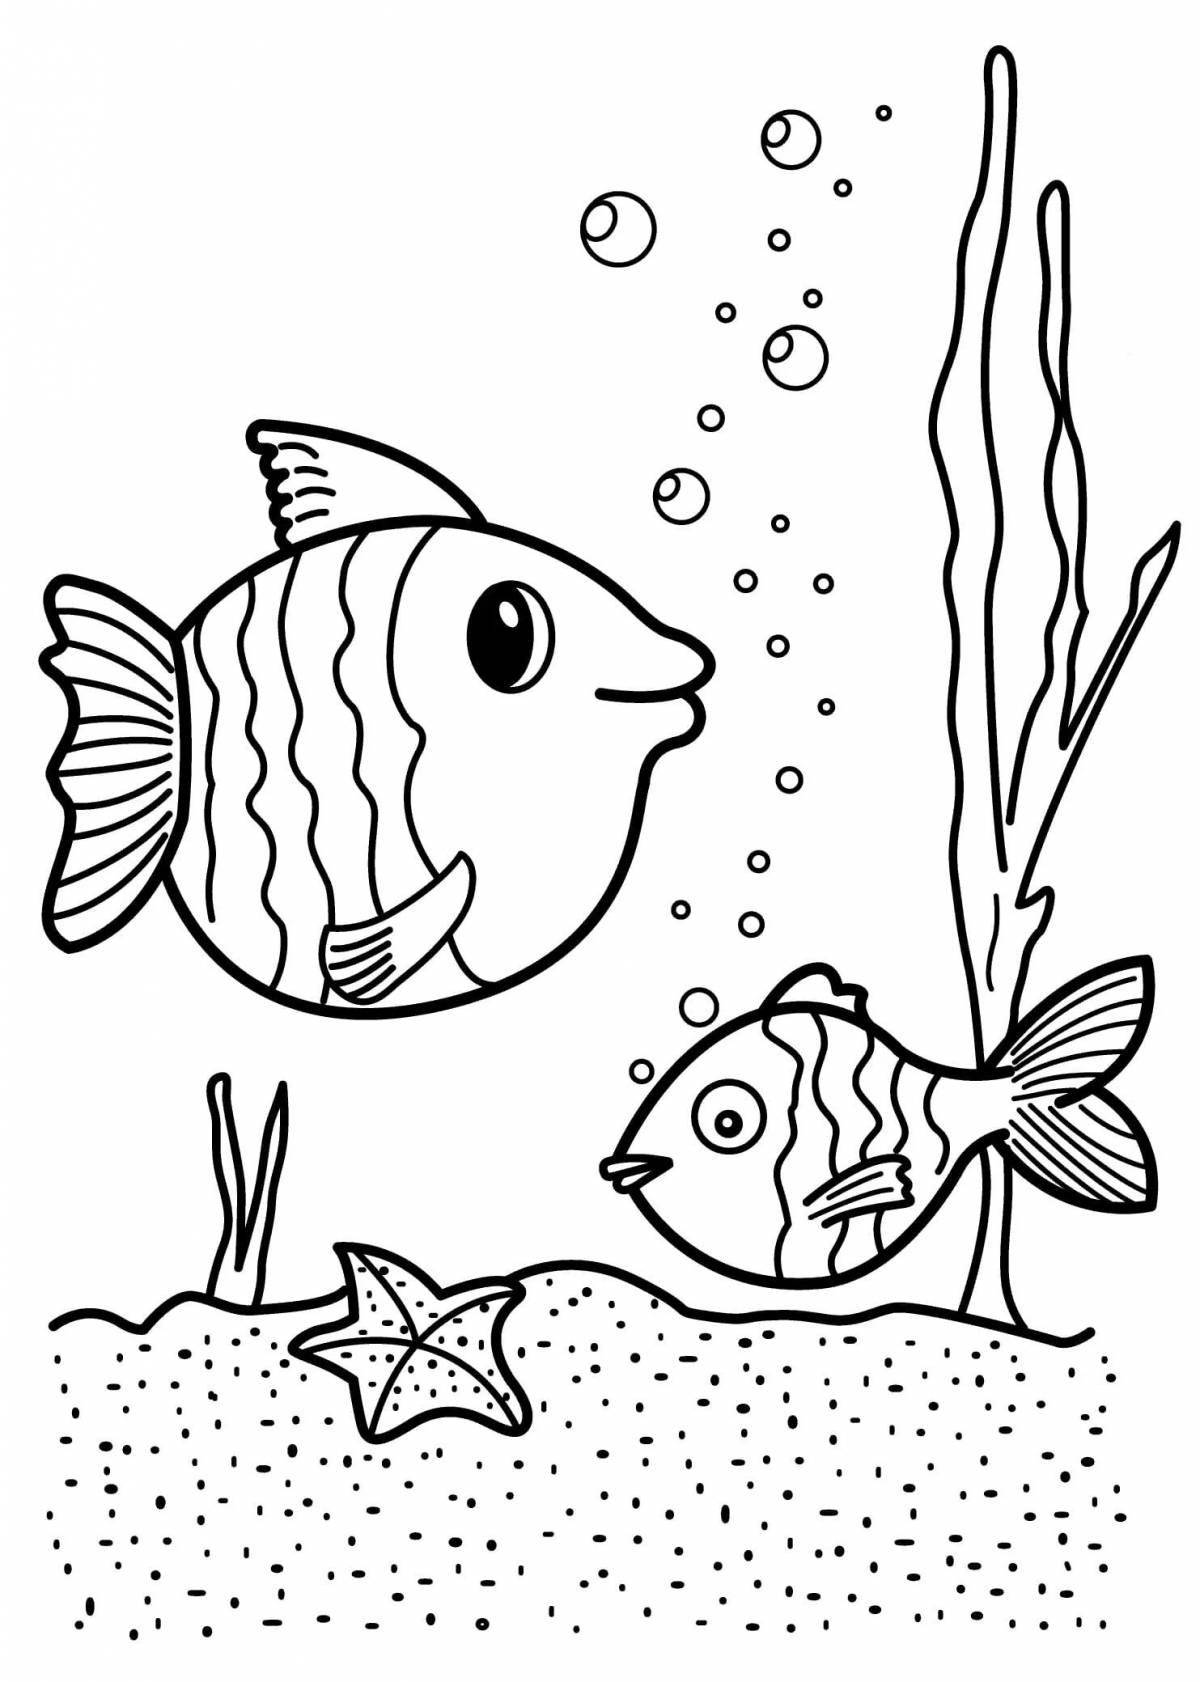 Увлекательная раскраска рыбки для детей 6-7 лет